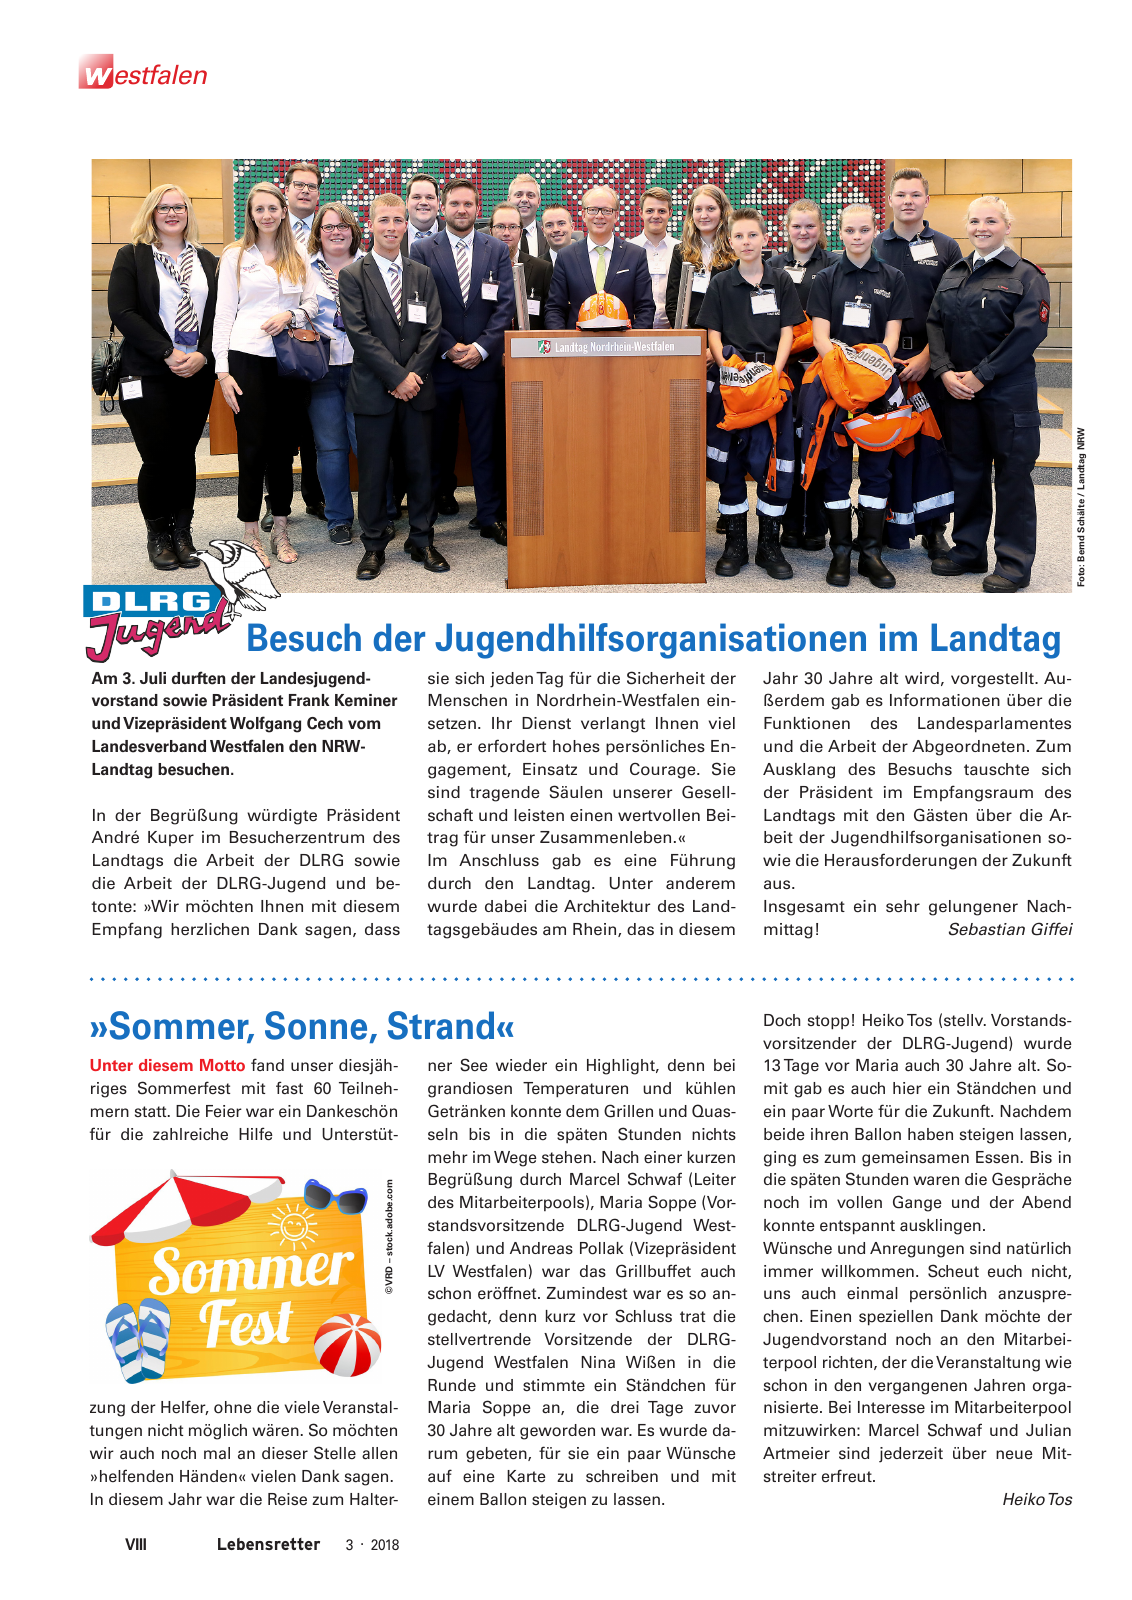 Vorschau Lebensretter 3/2018 - Regionalausgabe Westfalen Seite 10